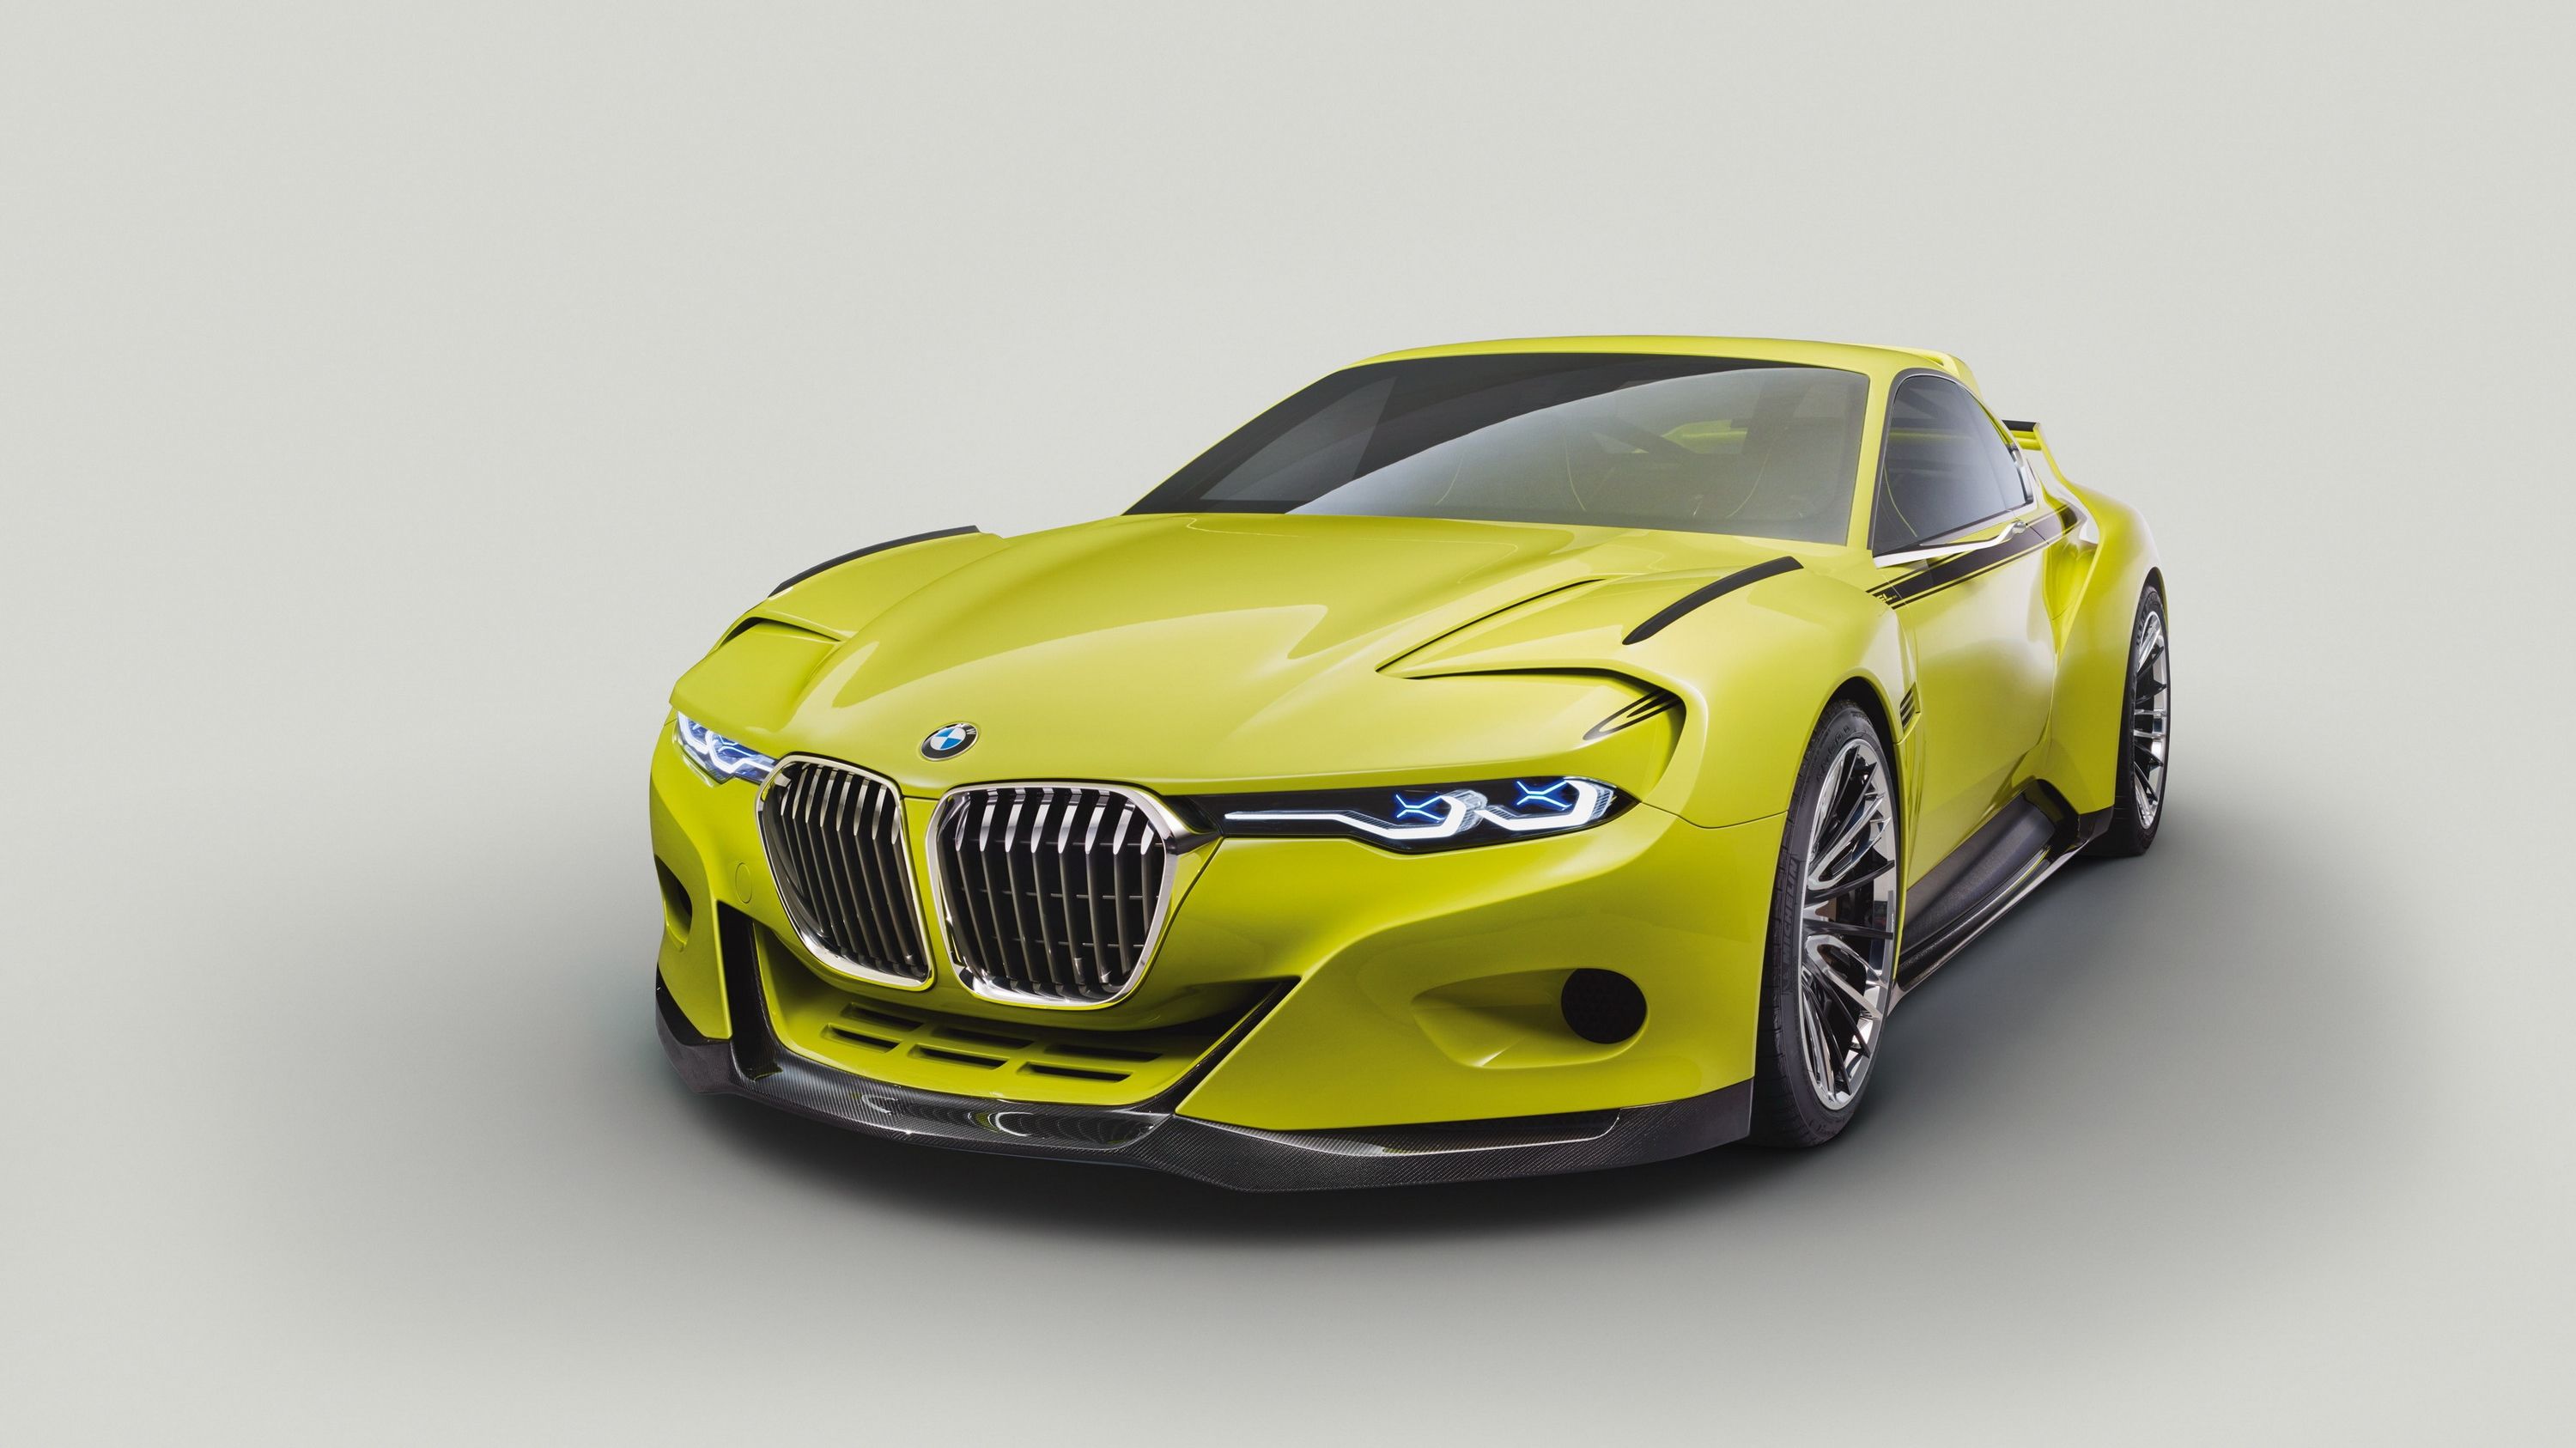 2015 BMW 3.0 CSL Hommage